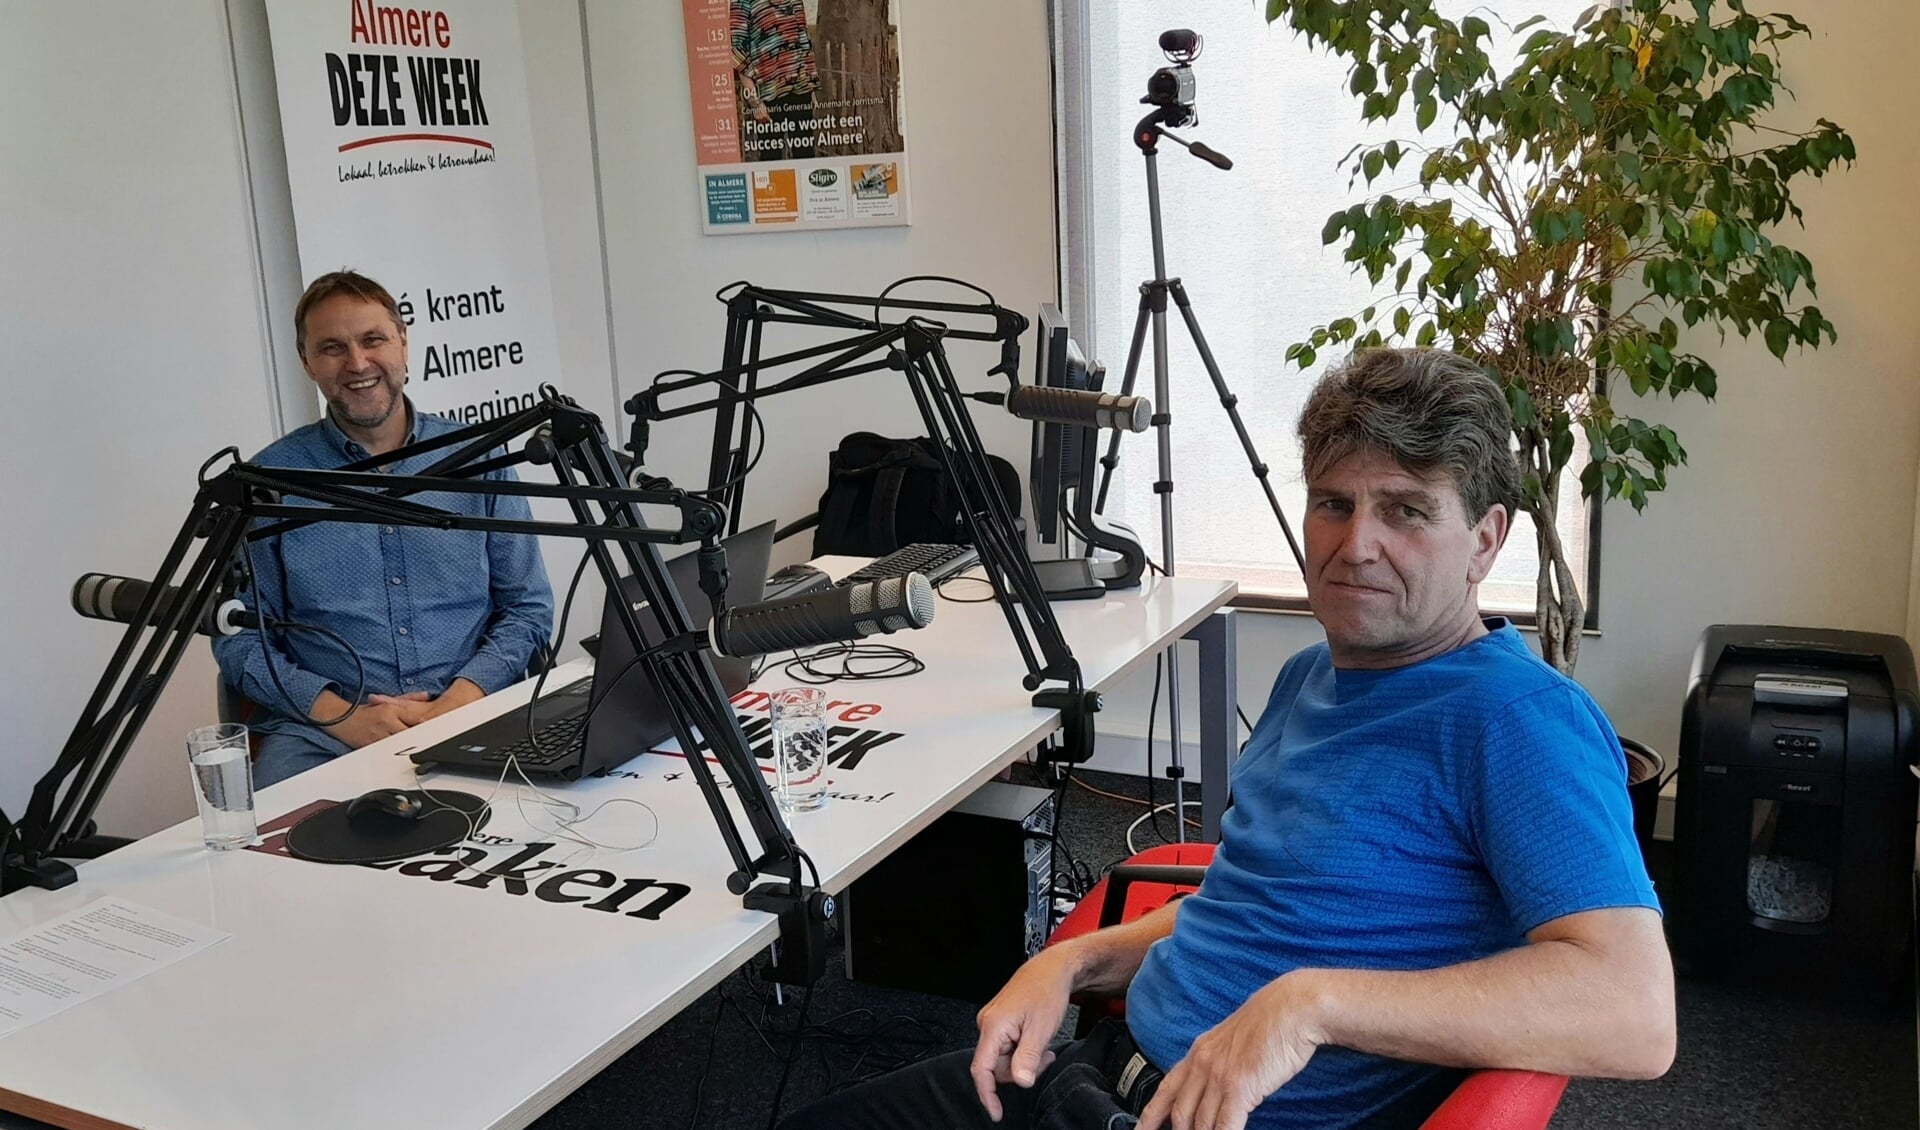 Willem Boutkan (PVV) in de podcaststudio. (Foto: Almere DEZE WEEK)